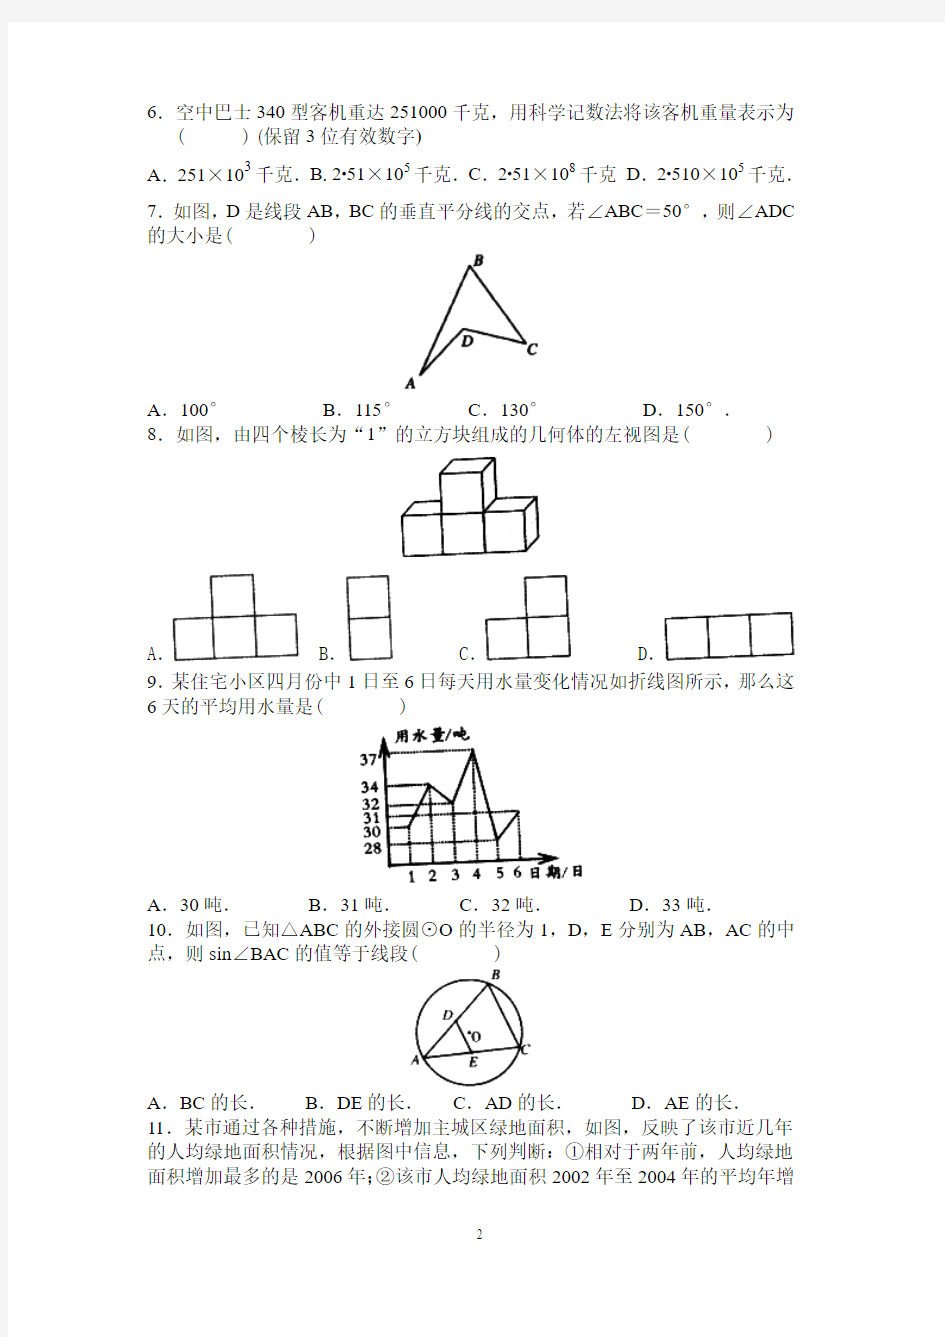 2009武汉市九年级四月调考数学试卷及答案